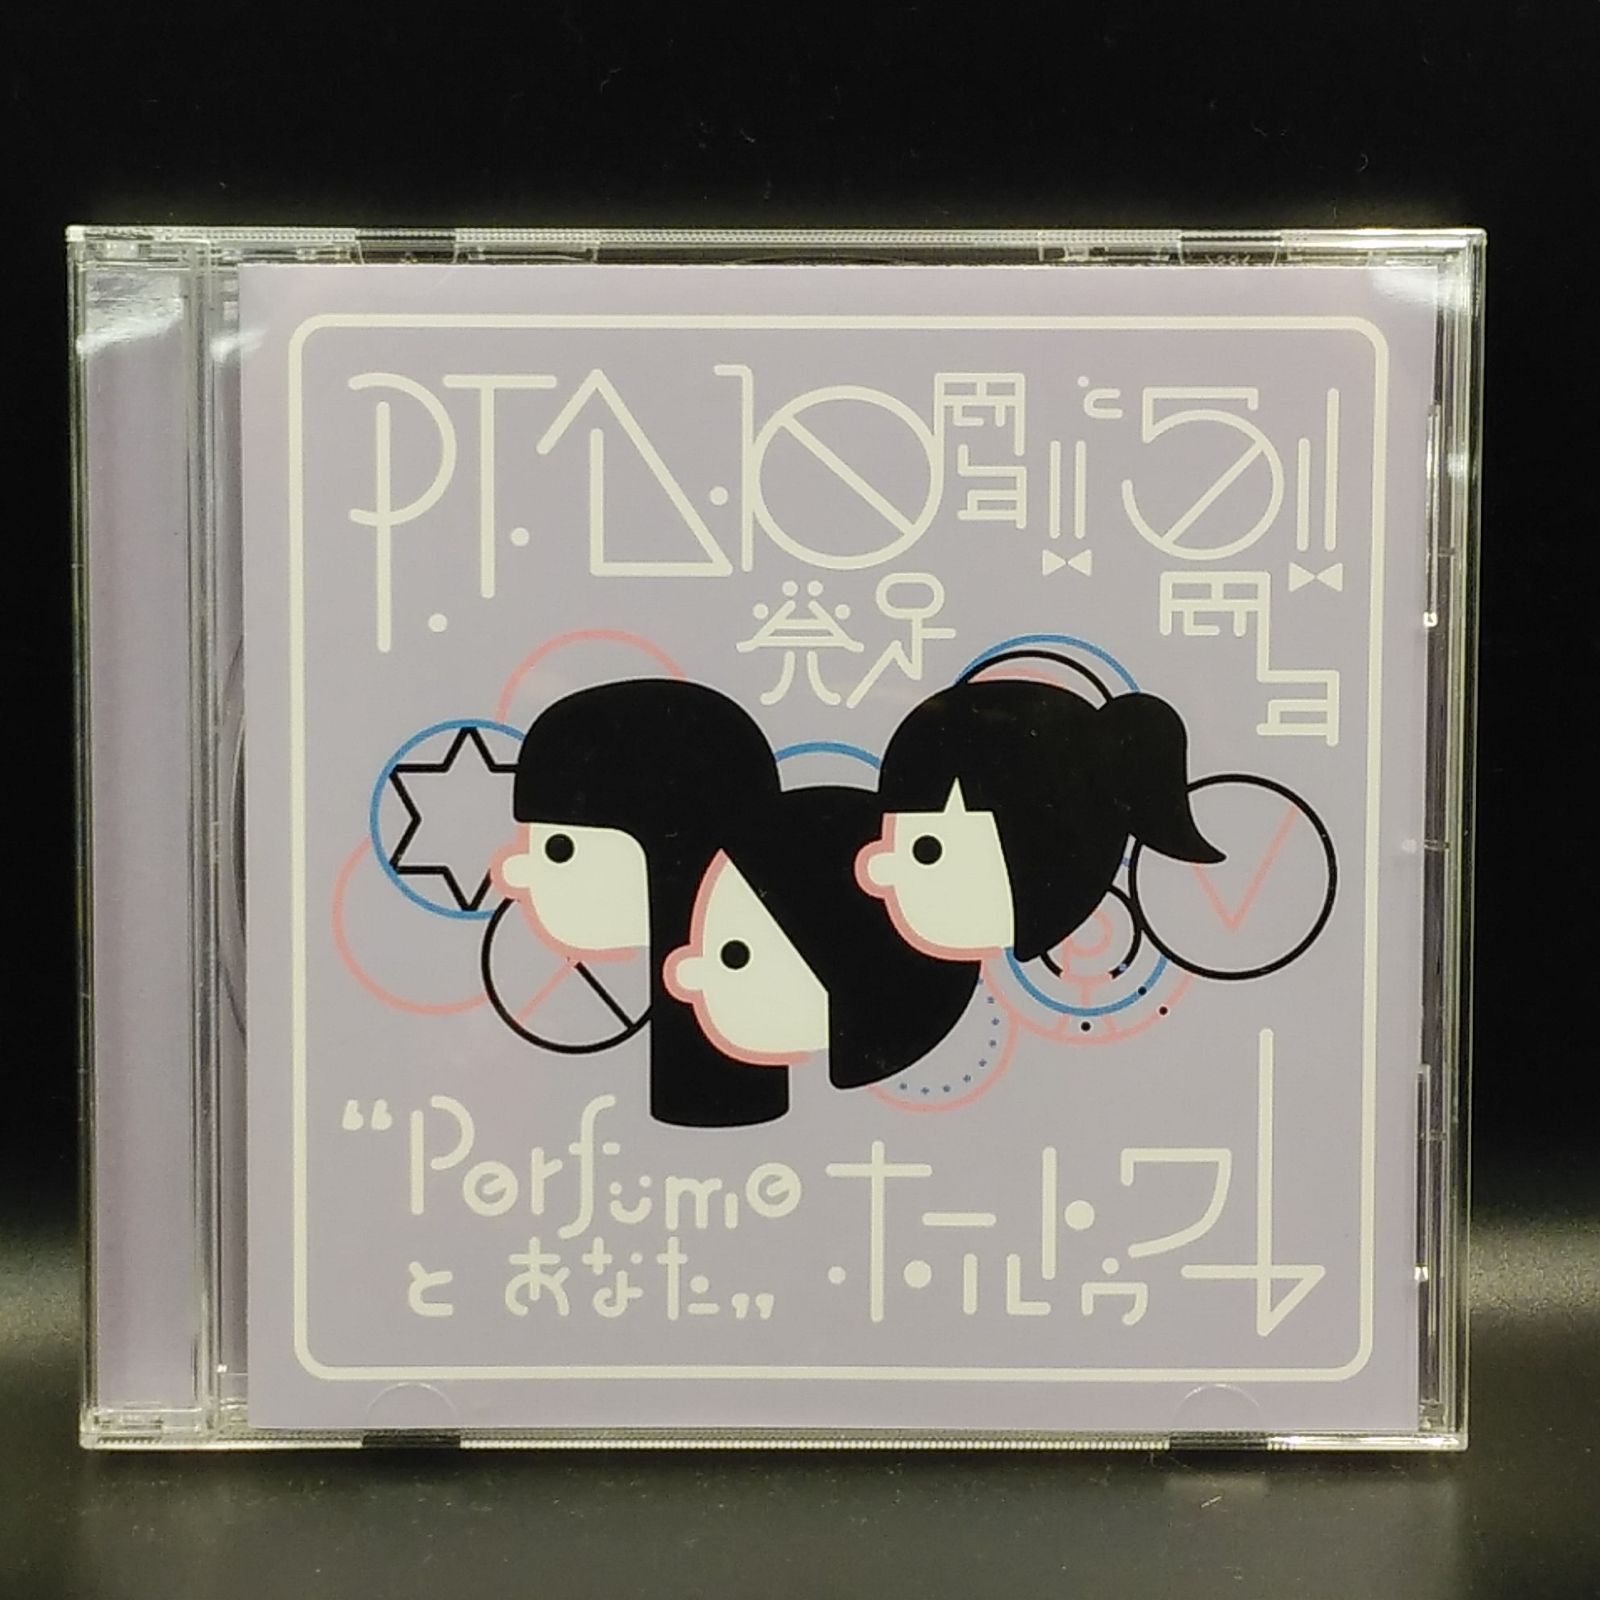 Perfume P.T.A.発足10周年!! と5周年!! ”Perfumeとあなた”ホール 